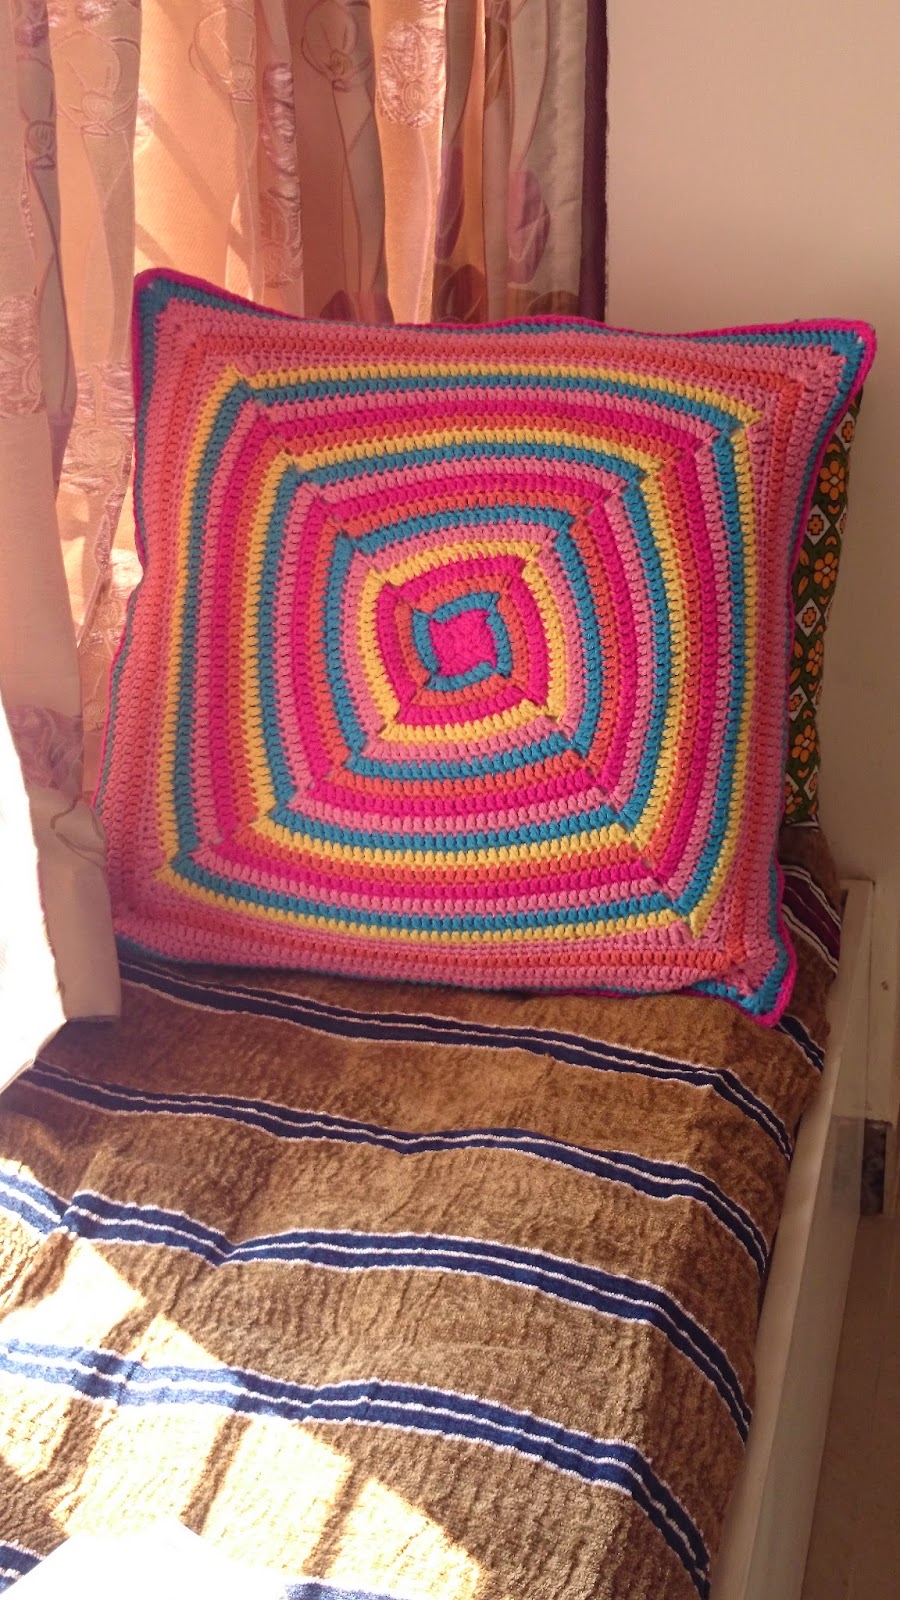 Crochet big cushion cover swirls pattern by Edie Eckman